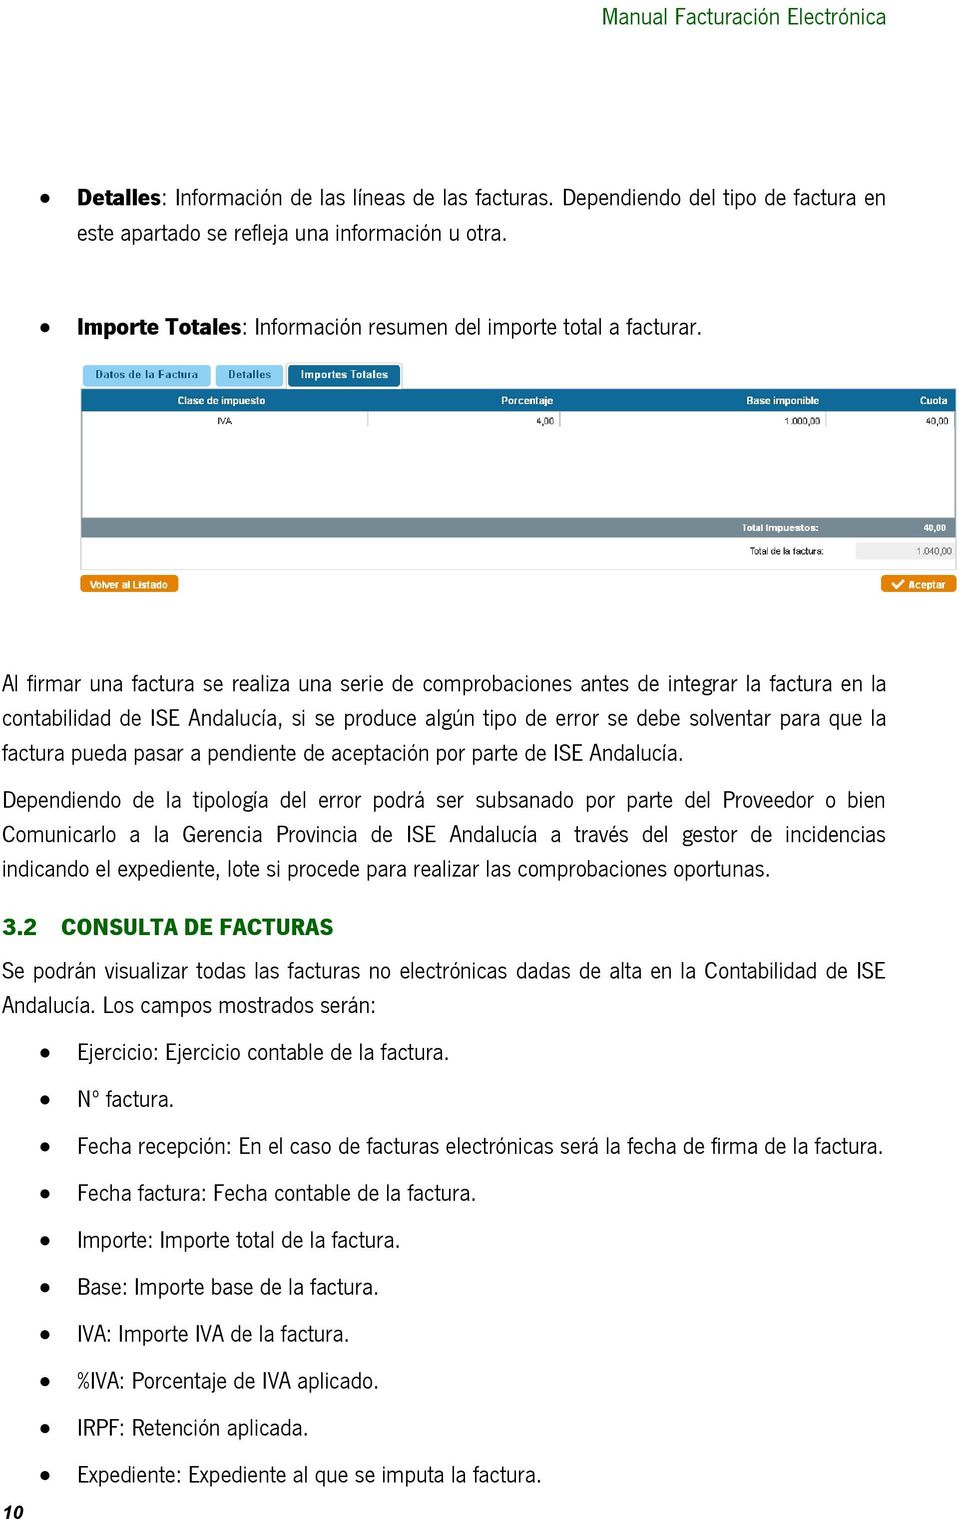 Al firmar una factura se realiza una serie de comprobaciones antes de integrar la factura en la contabilidad de ISE Andalucía, si se produce algún tipo de error se debe solventar para que la factura